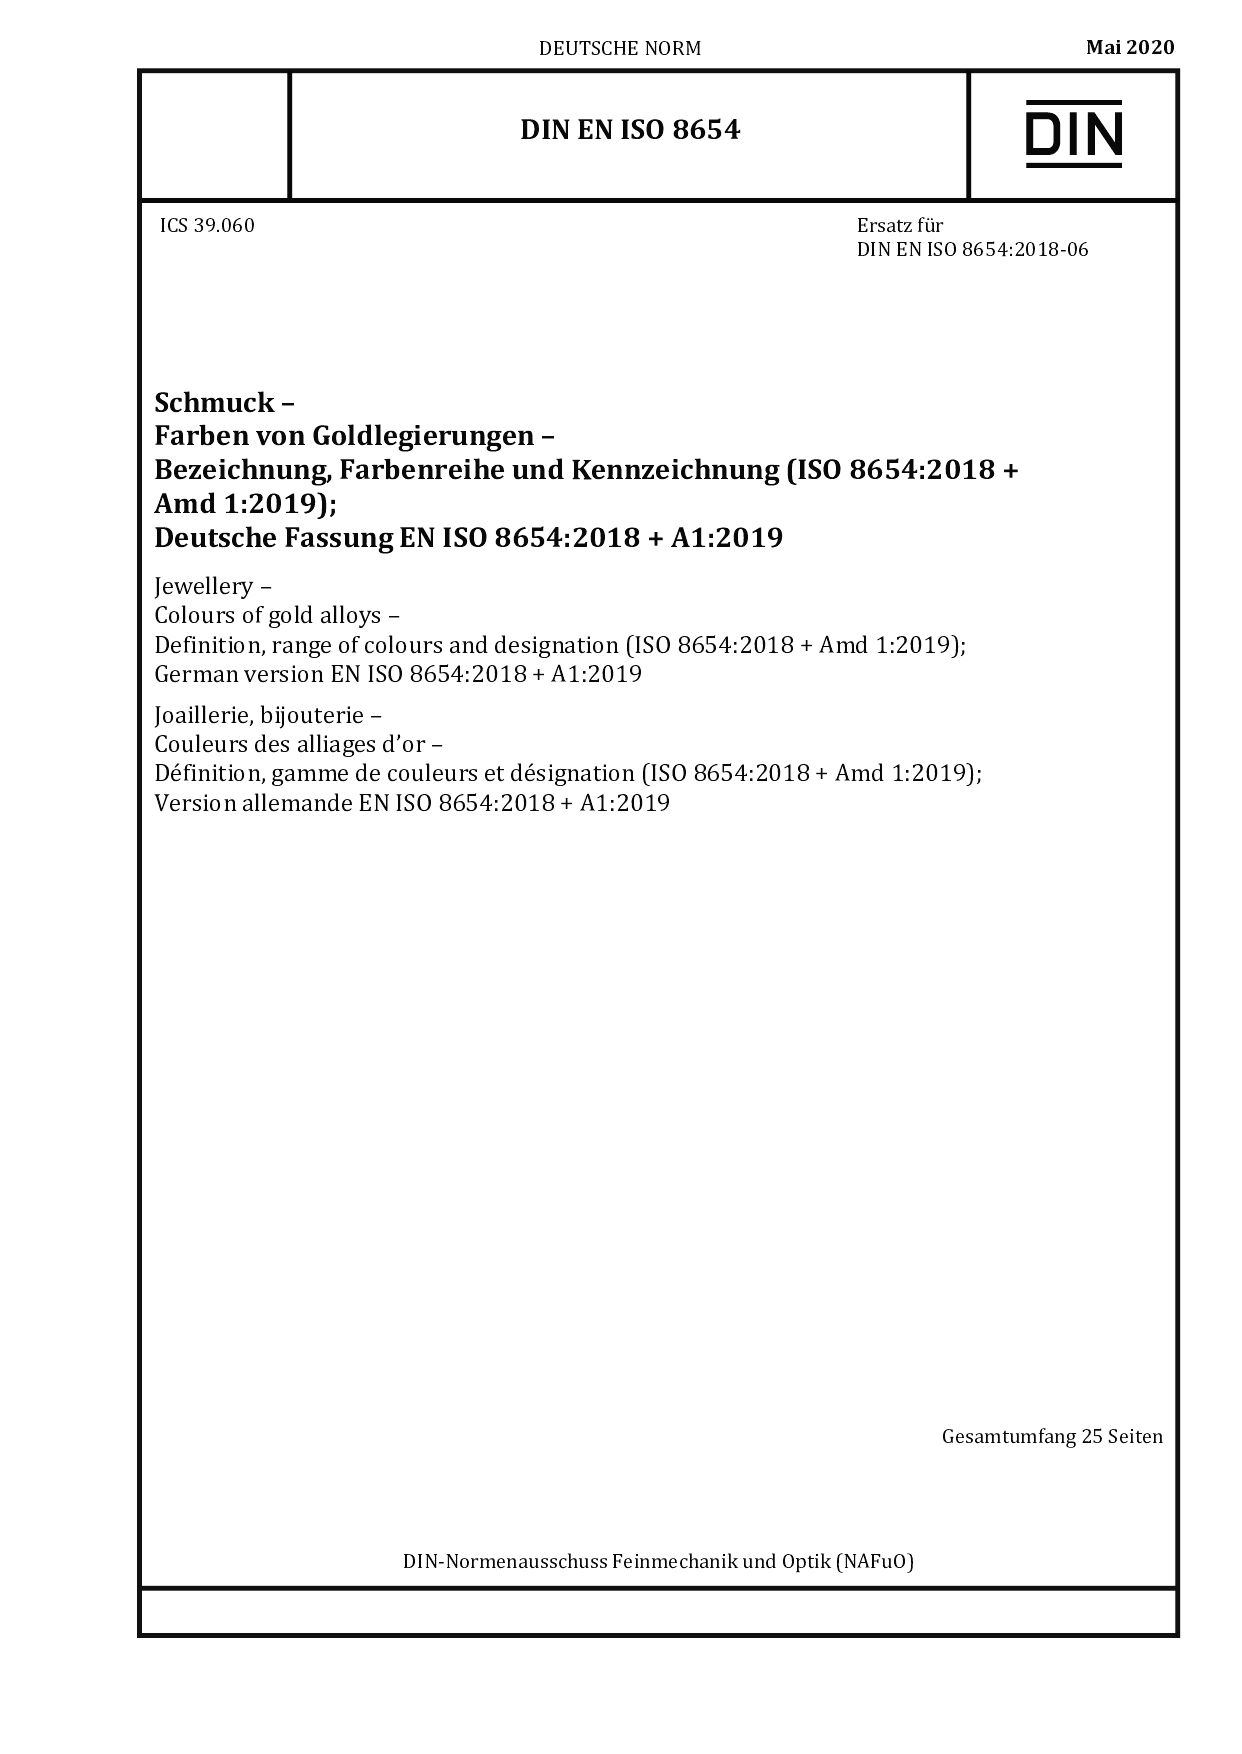 DIN EN ISO 8654:2020封面图